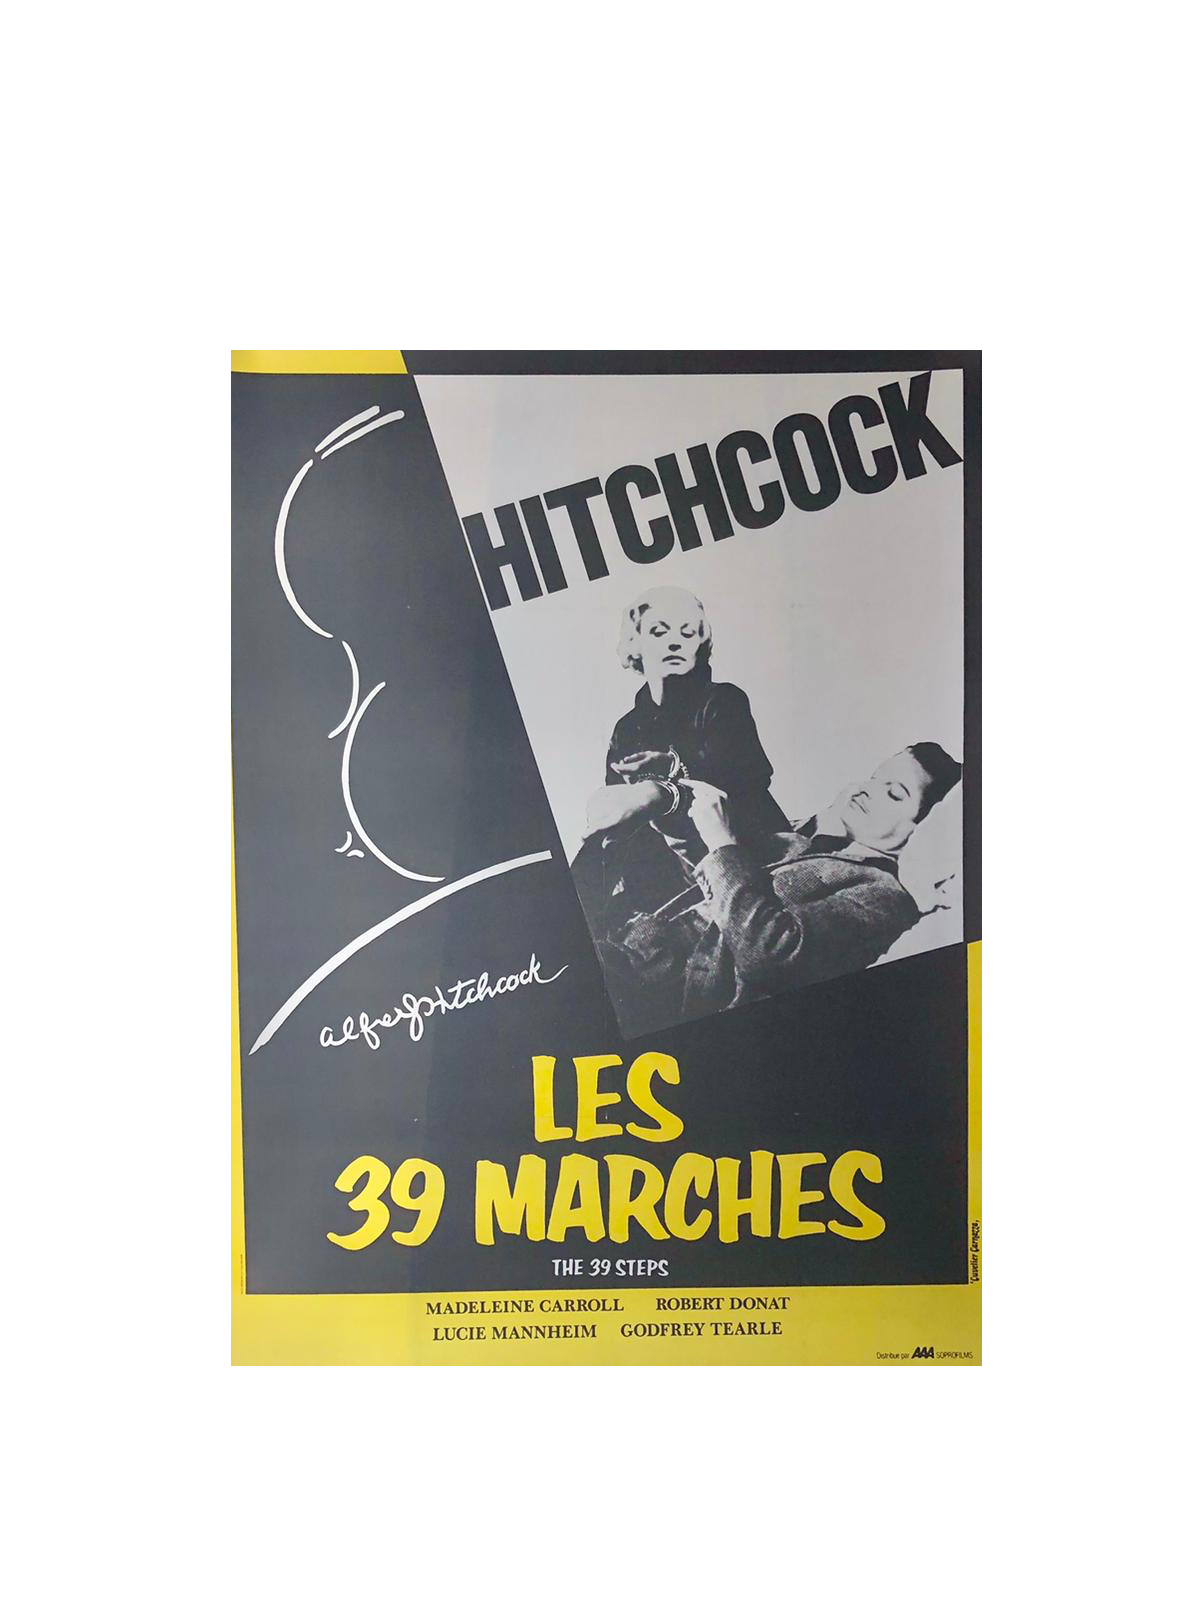 'The 39 Steps' Original Hitchcock Film Poster